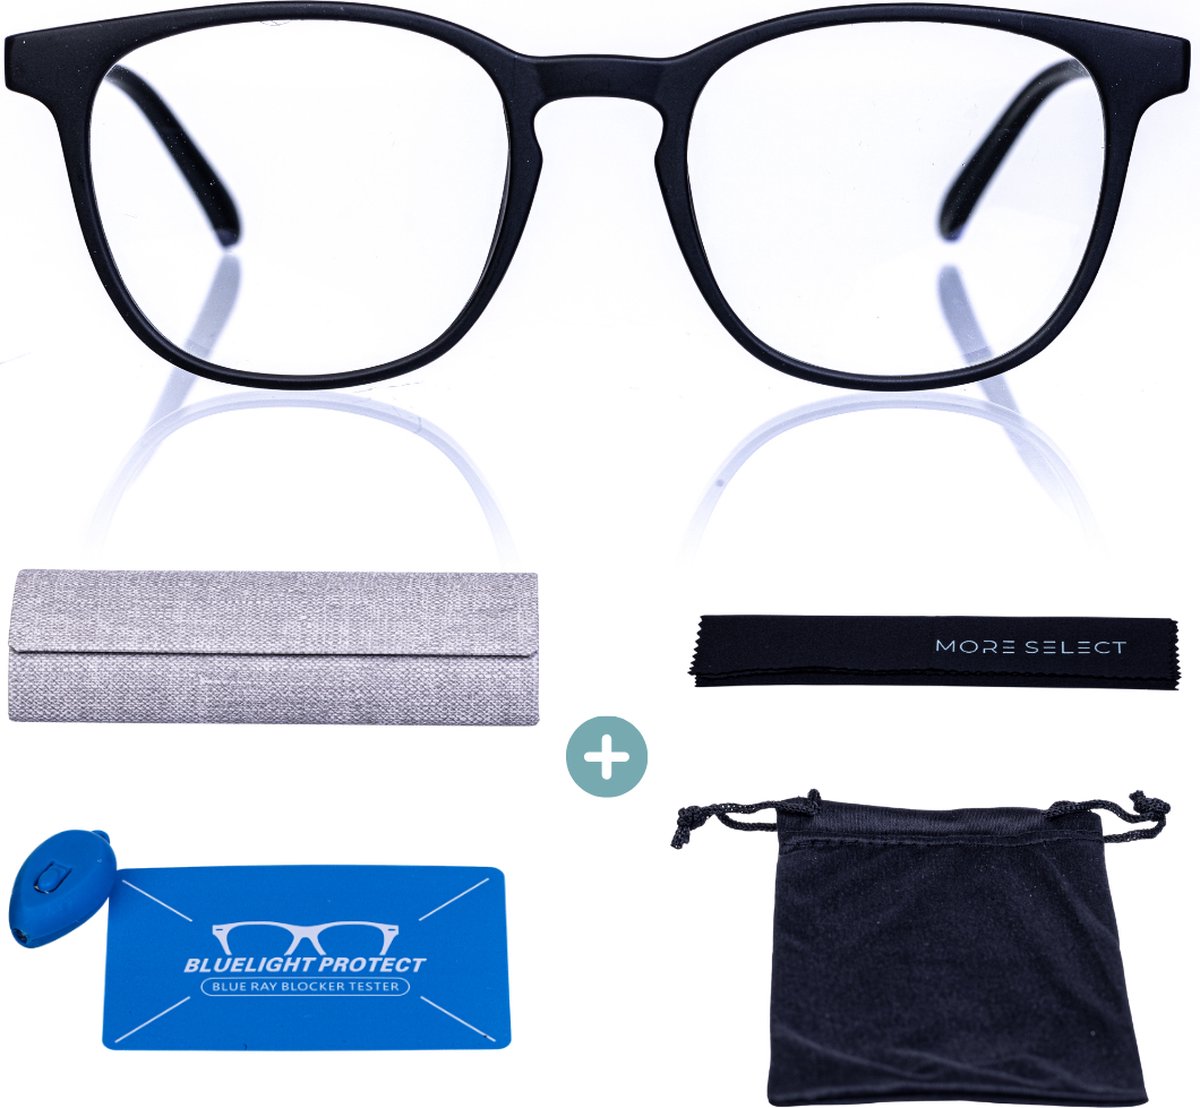 MoreSelect - Blauw Licht Bril Zonder Sterkte - Computerbril - Blue Light Glasses - Beeldschermbril